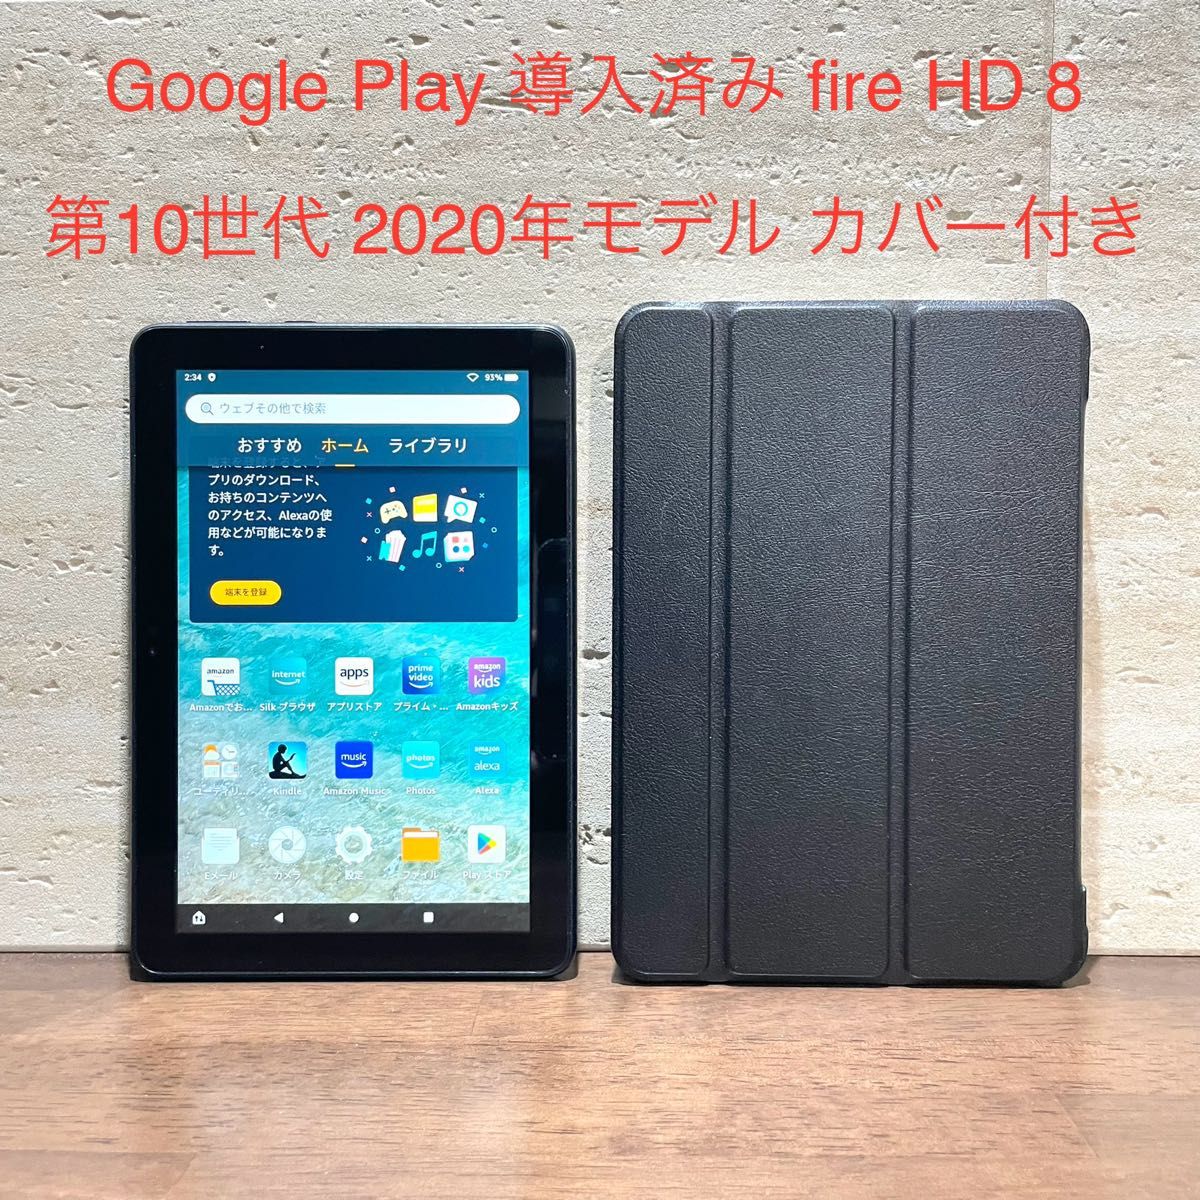 Amazon fire HD 8 ブラック 第10世代 2020年モデル 32GB 黒 カバー付き 中古品